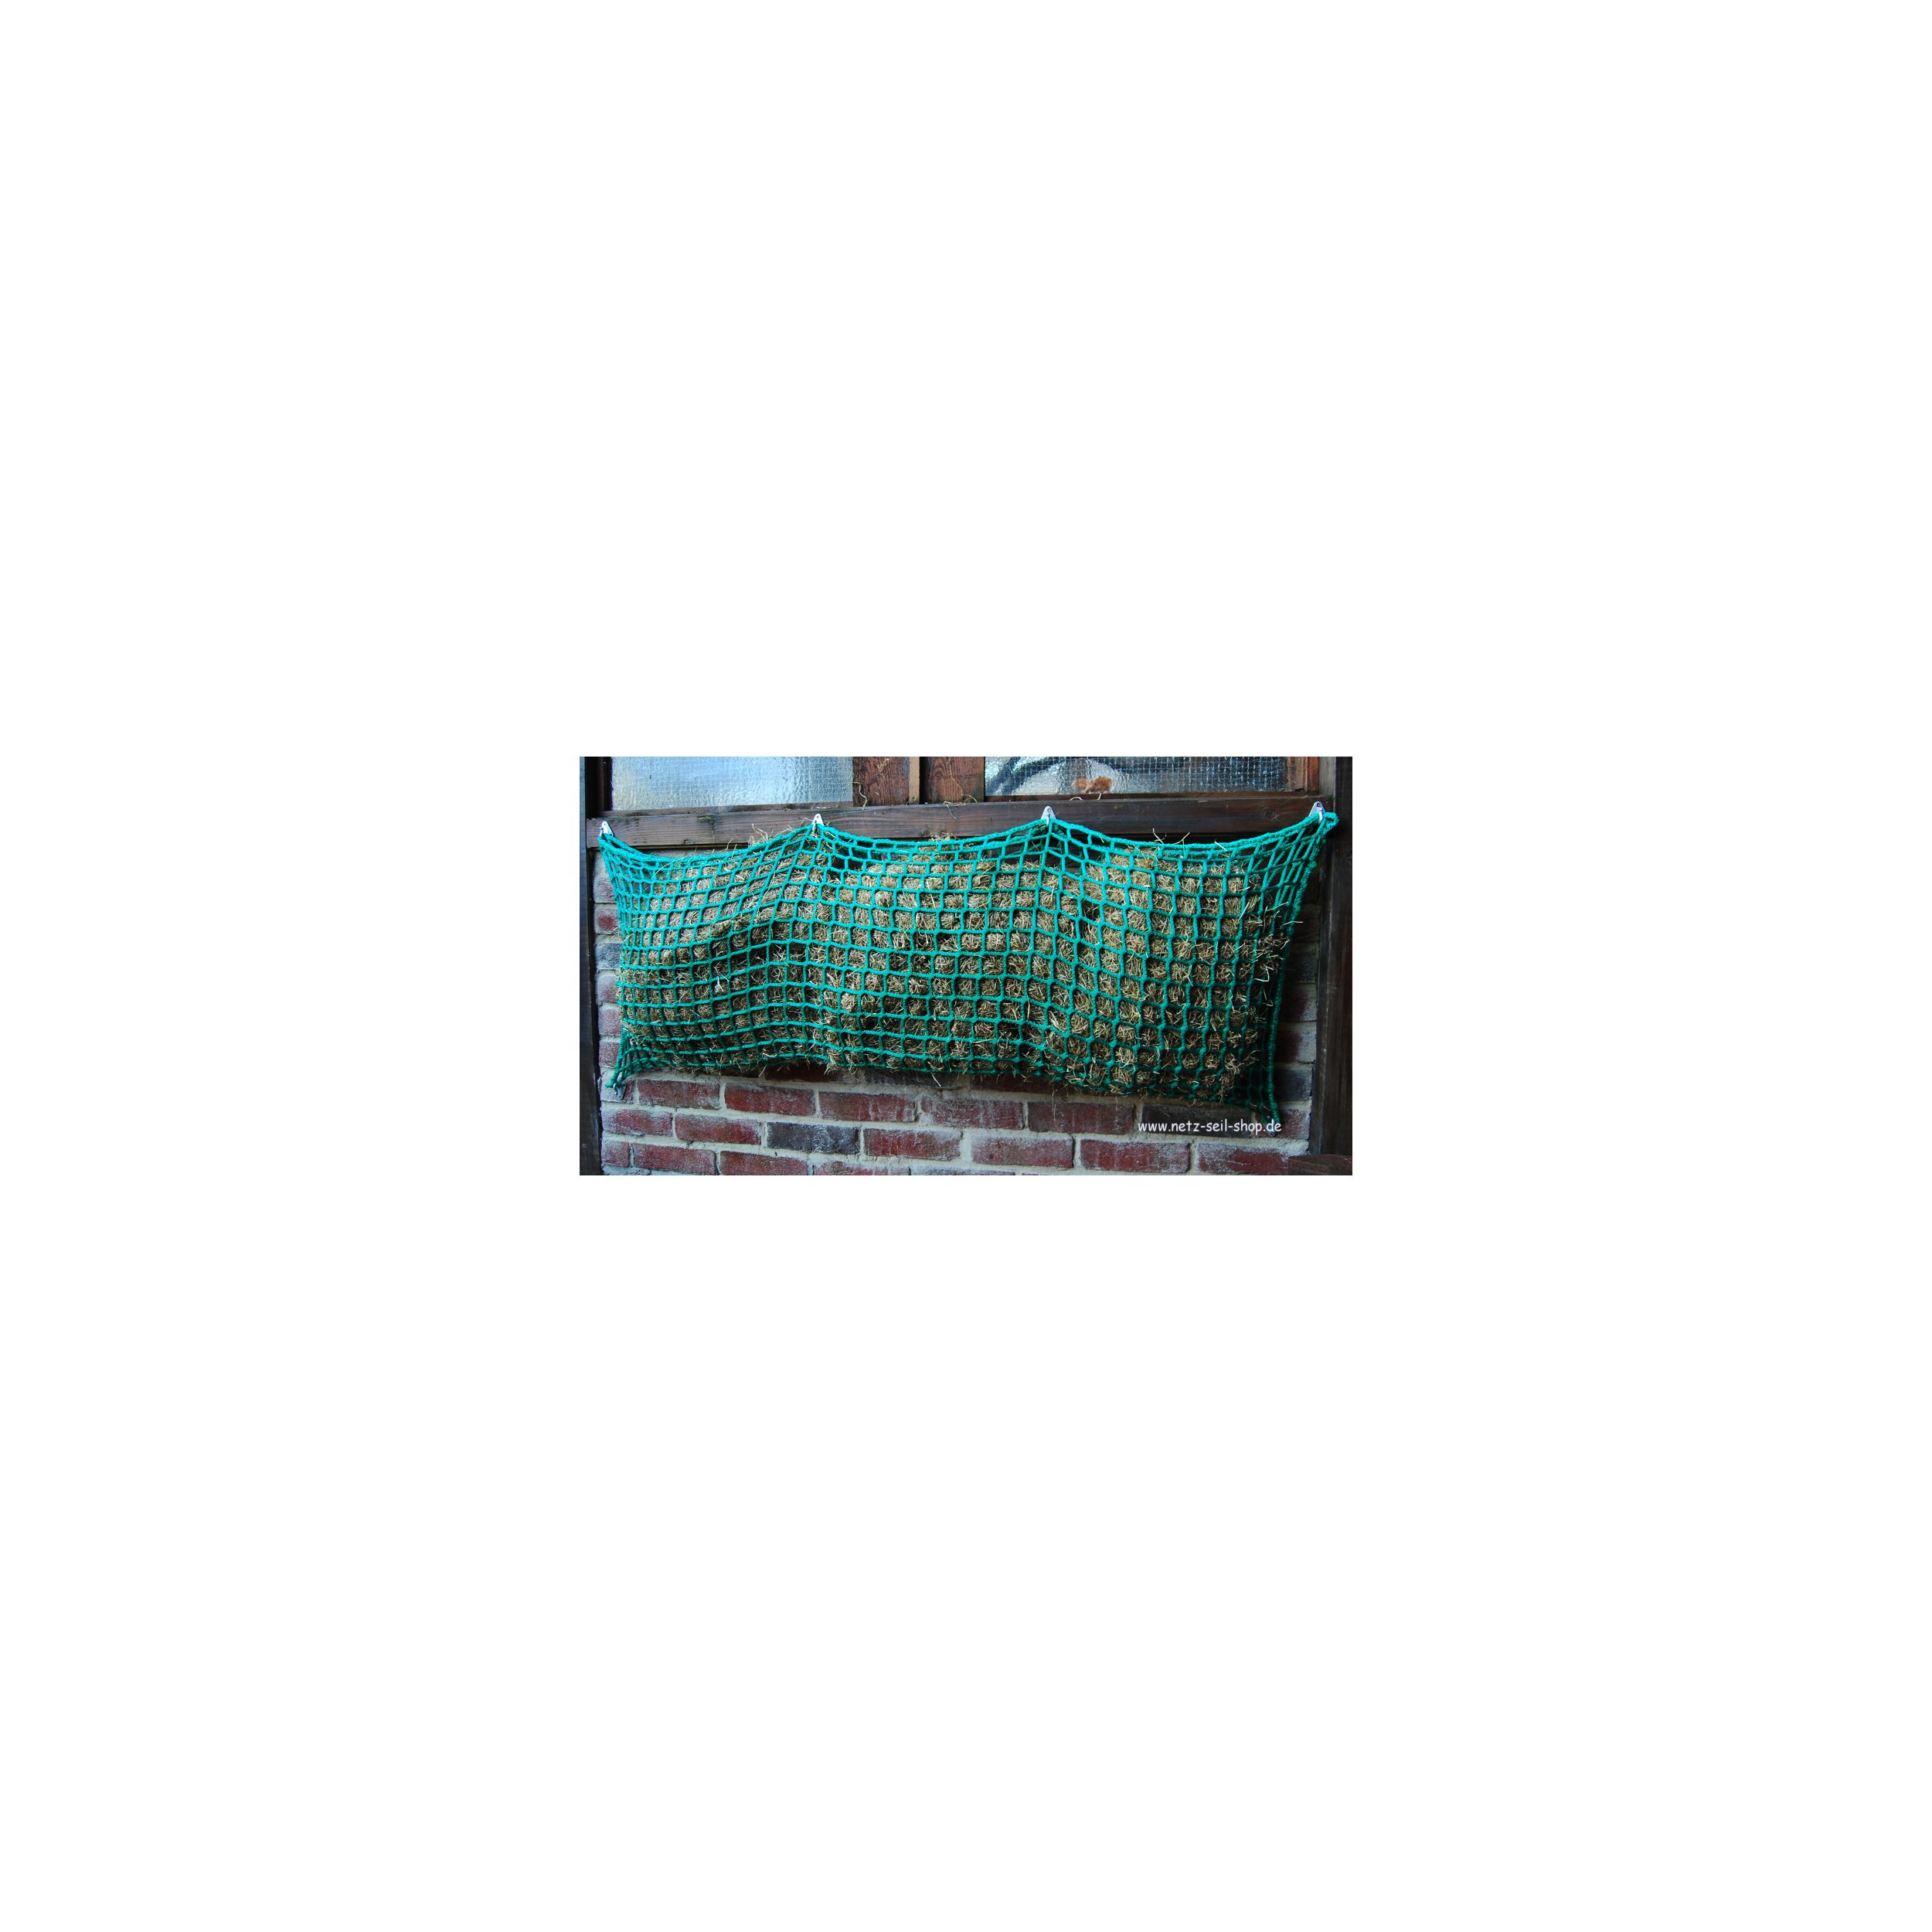 Hooi net in zakvorm, 1,20 m breed, hoogte 0,60 m Ø 5 mm garen dikte, # 45 mm maas